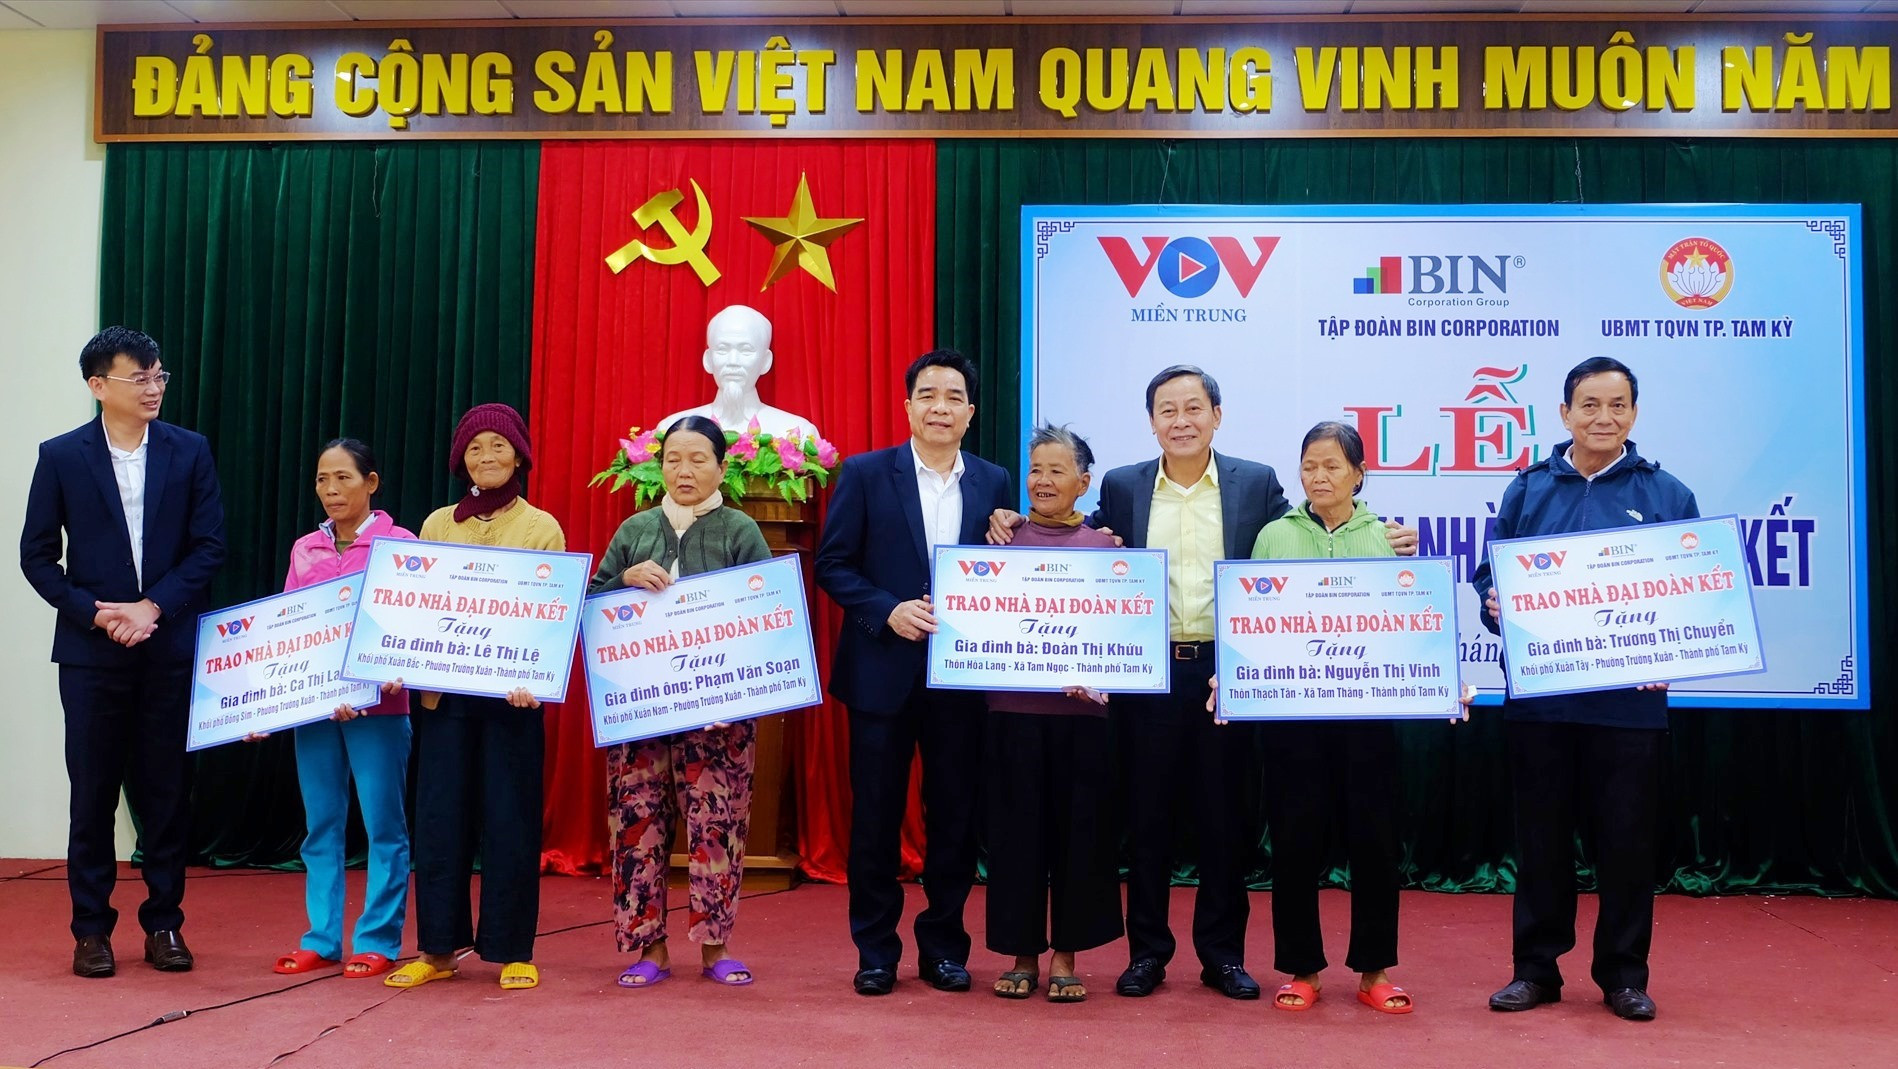 VOV miền Trung, Tập đoàn BIN Corporation trao tặng 6 nhà đại đoàn kết cho các hộ dân khó khăn. Ảnh: M.L